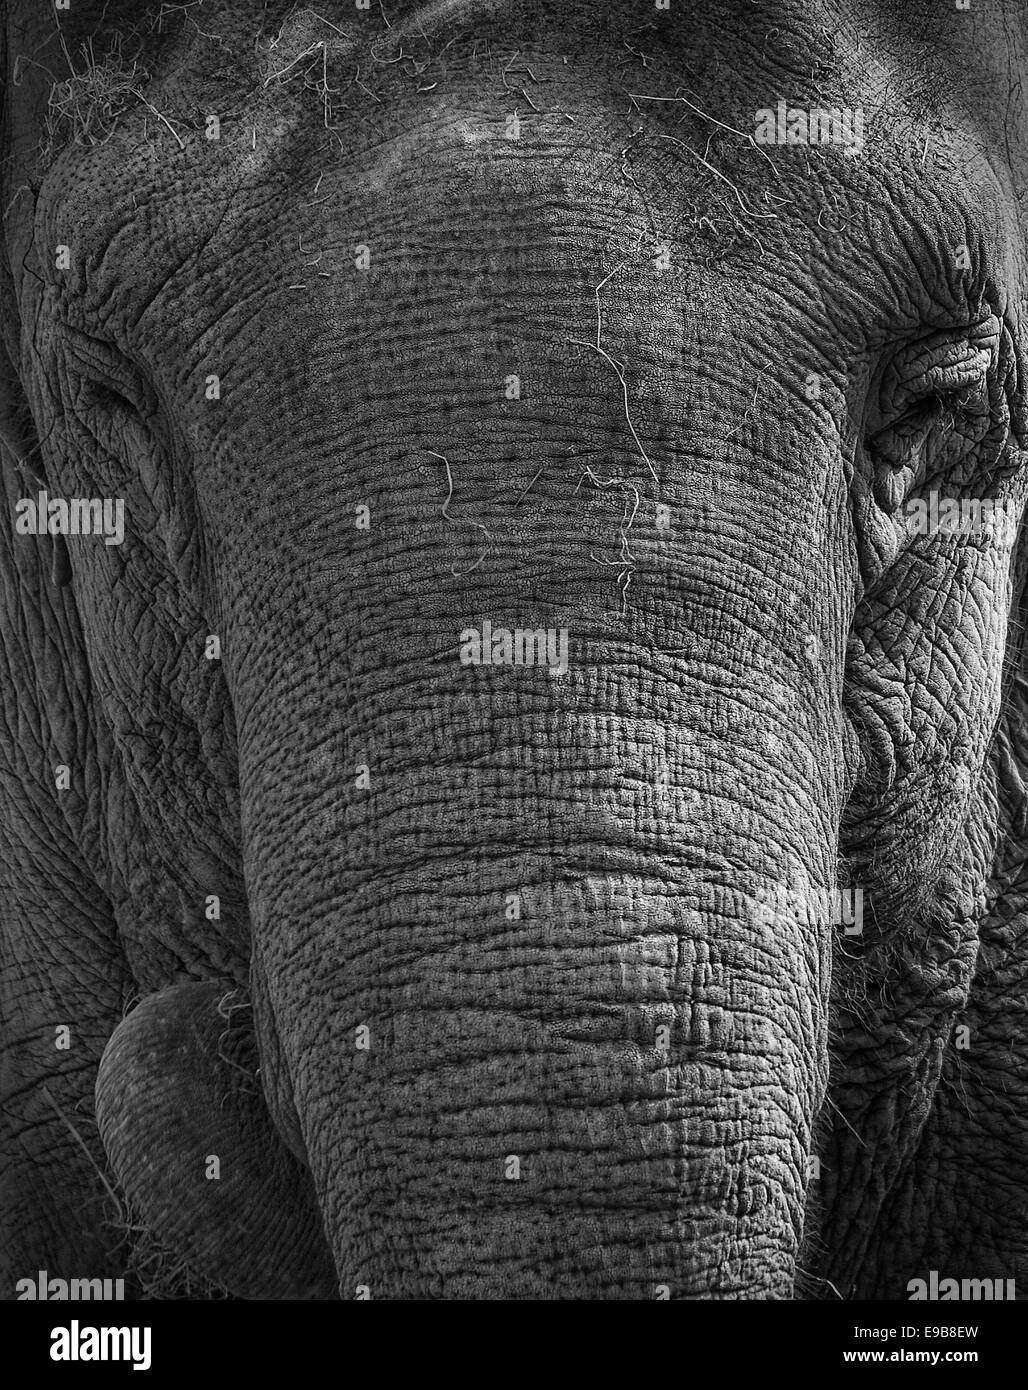 Greyscale elephant Stock Photo